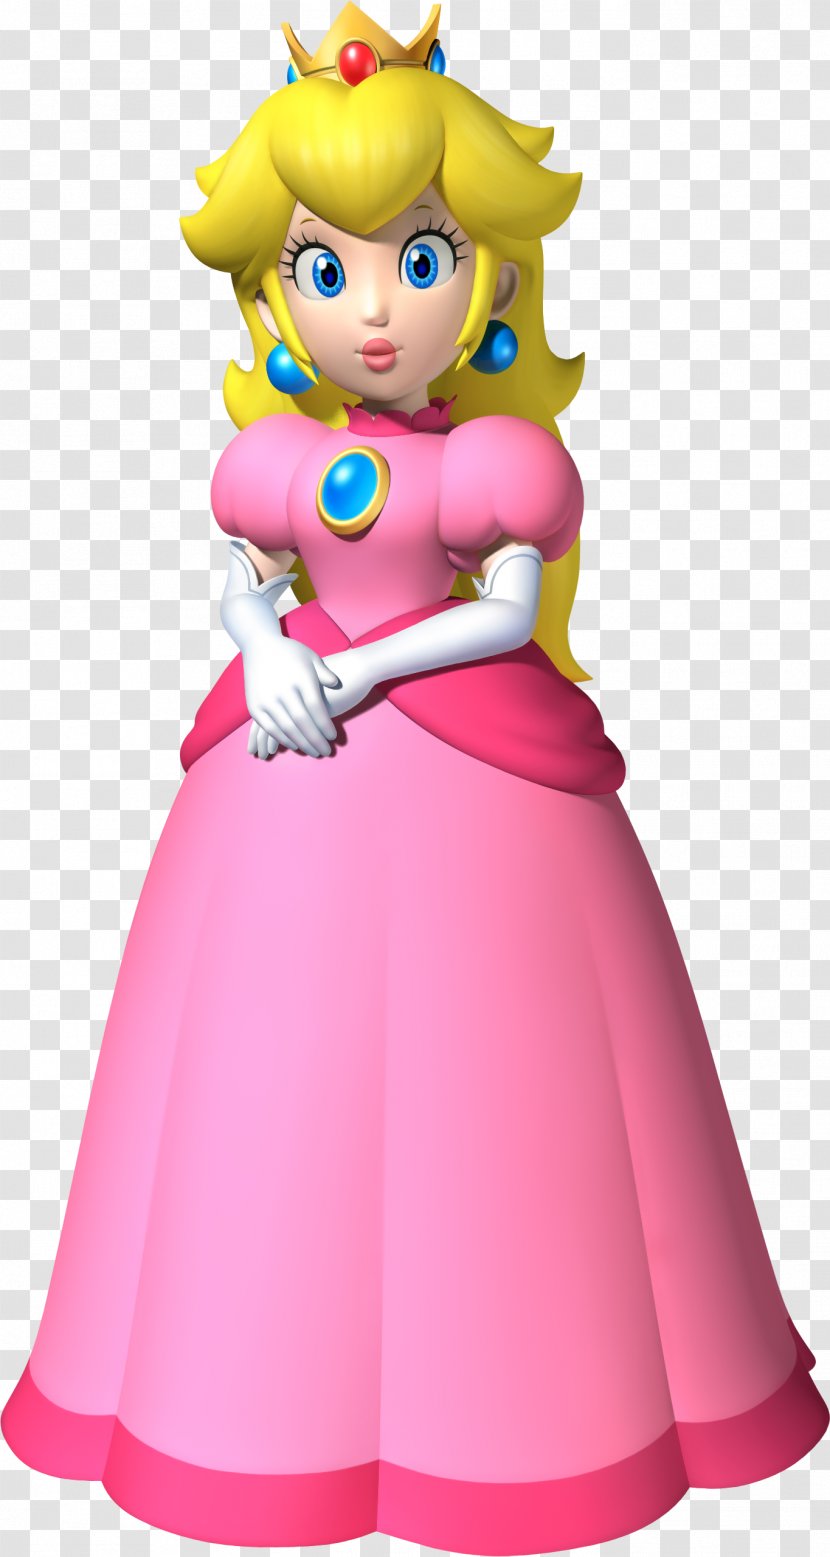 Super Mario Bros. Princess Peach - Cartoon Transparent PNG